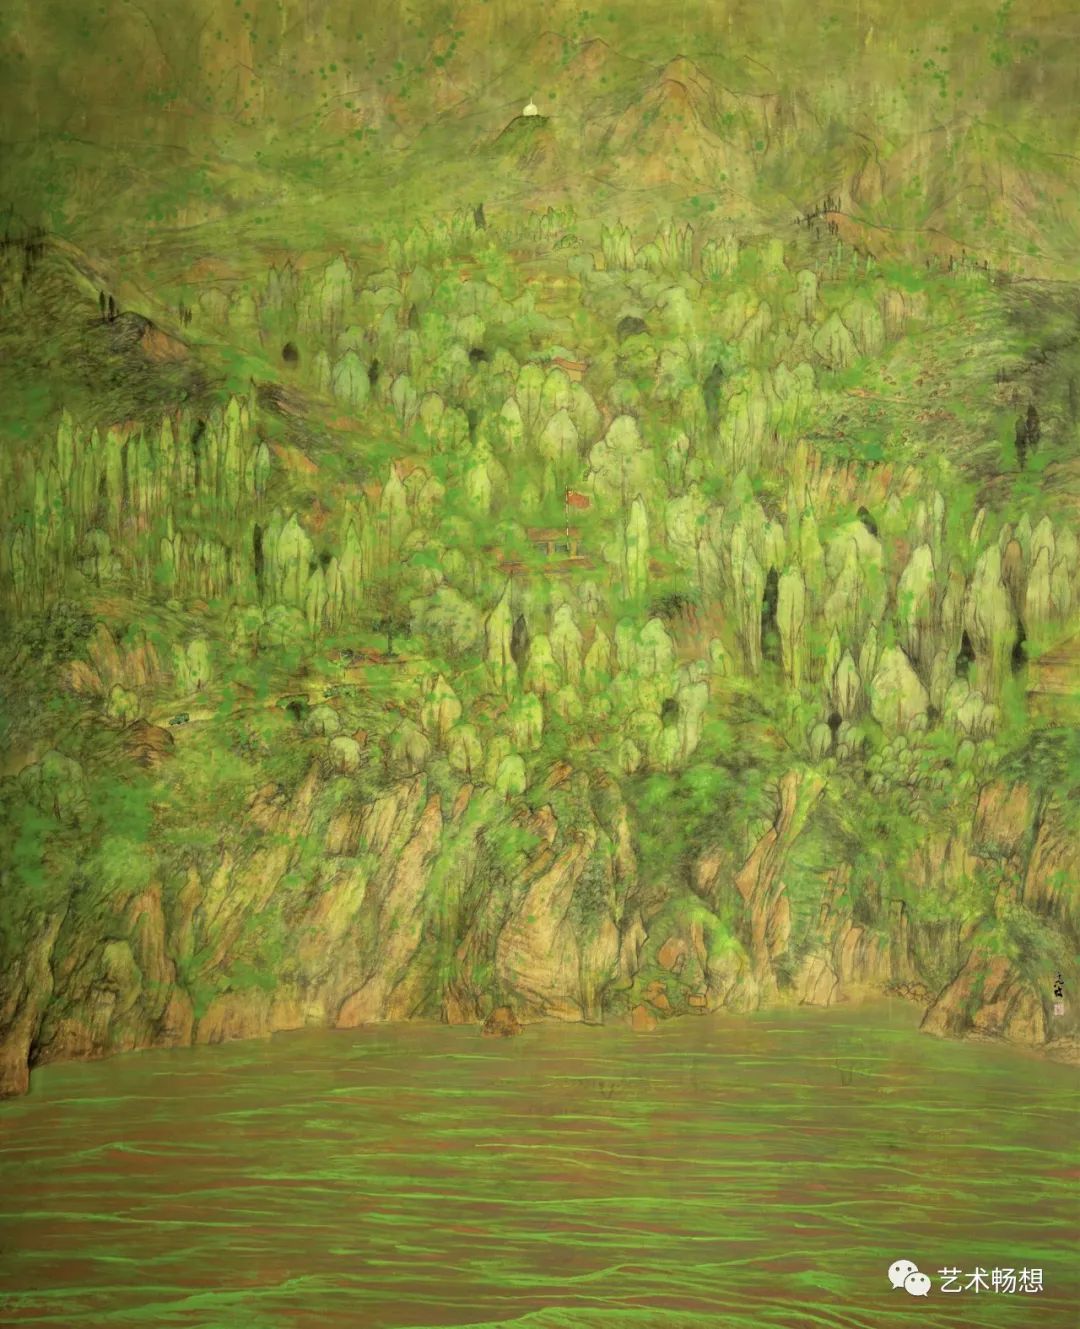 大千春色藏心间——著名画家高波的青绿山水